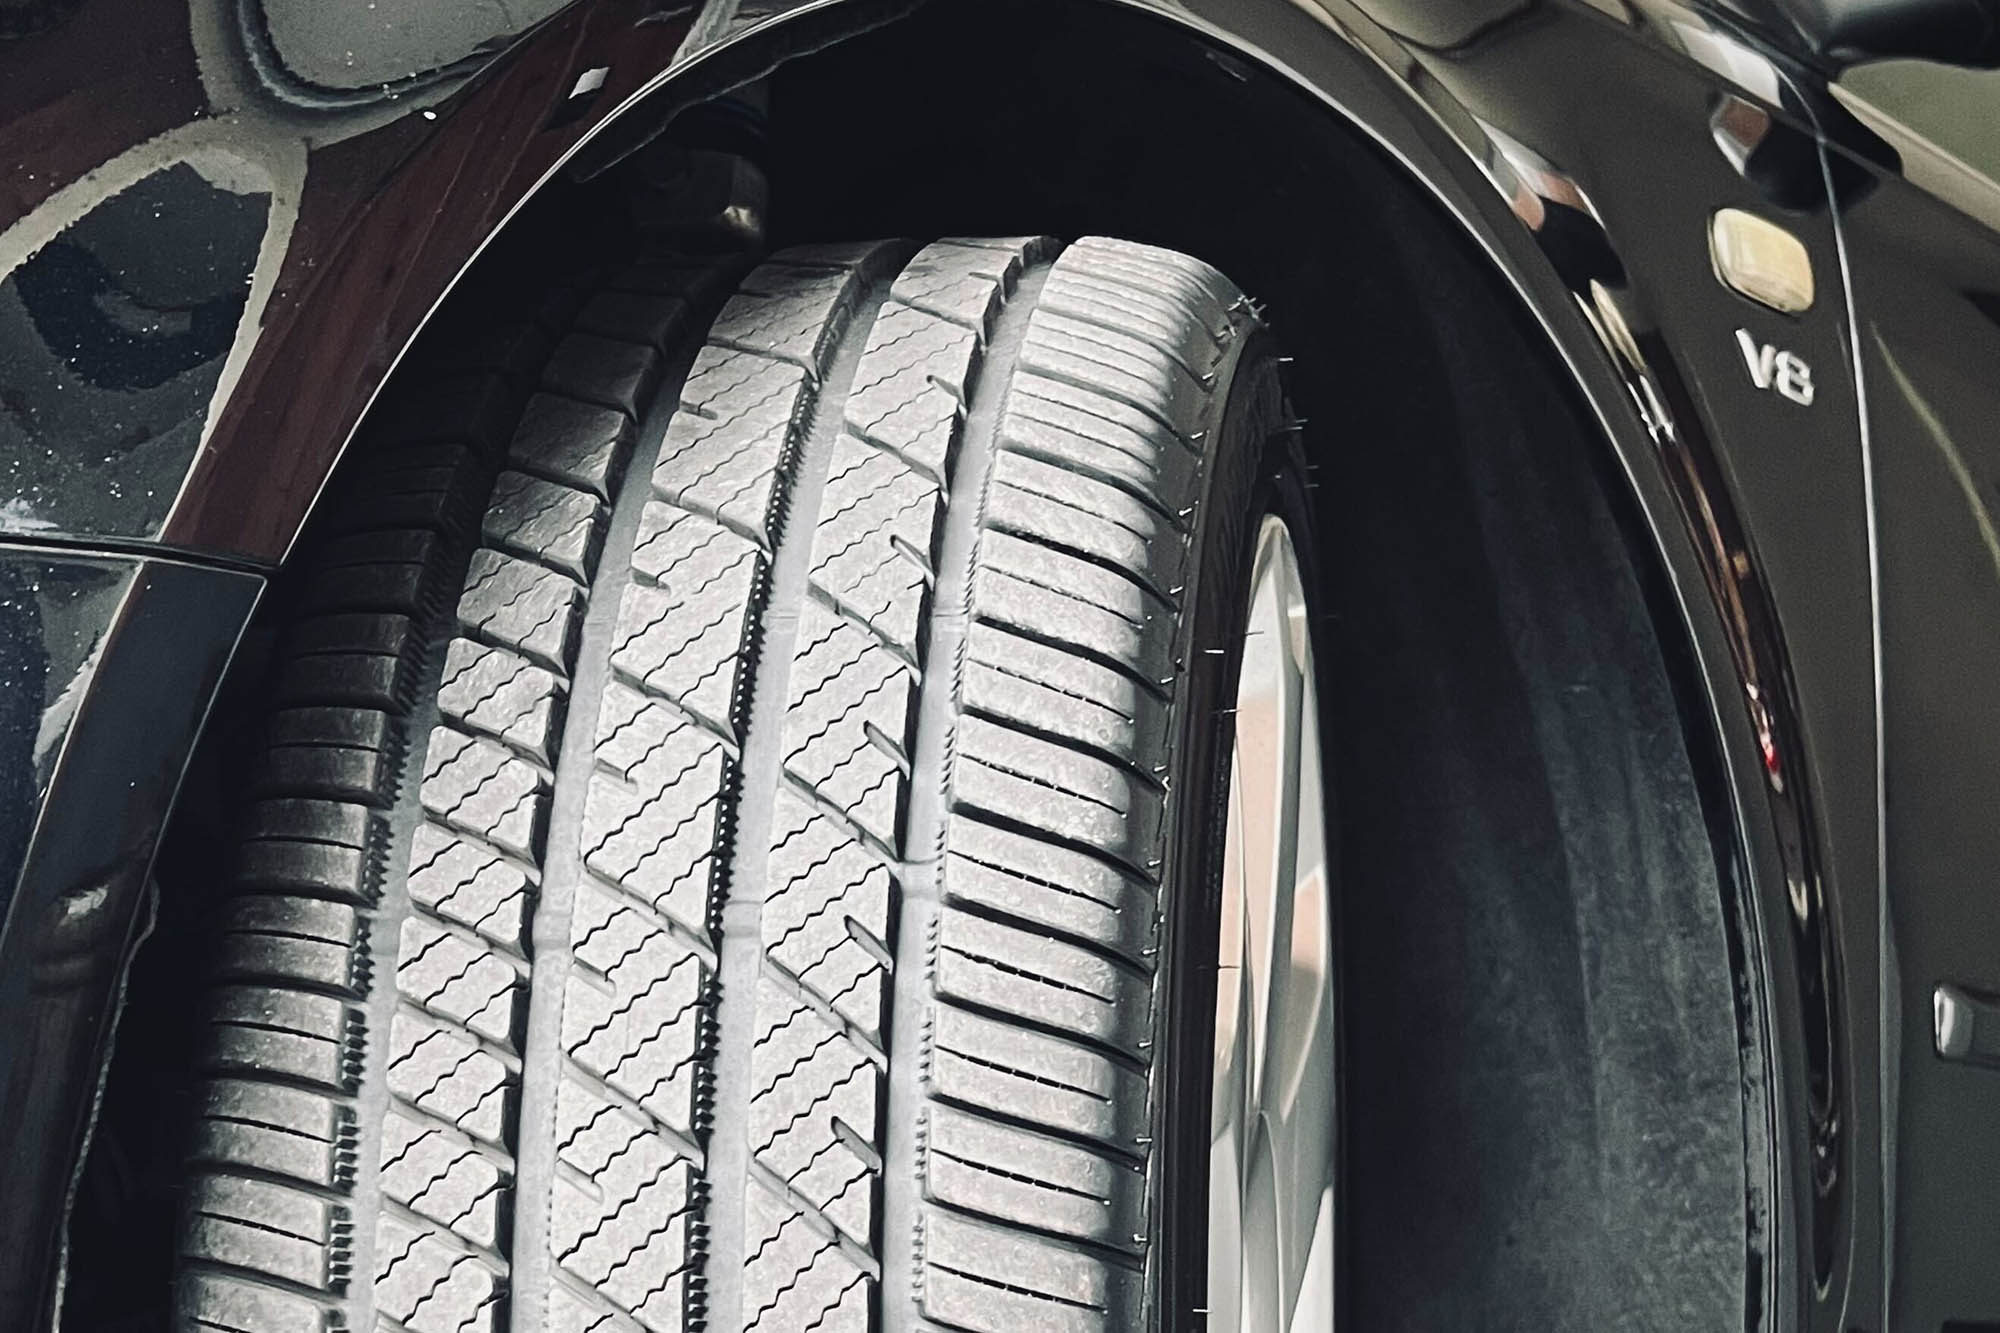 A Bridgestone Potenza RE980AS+ non-directional tire